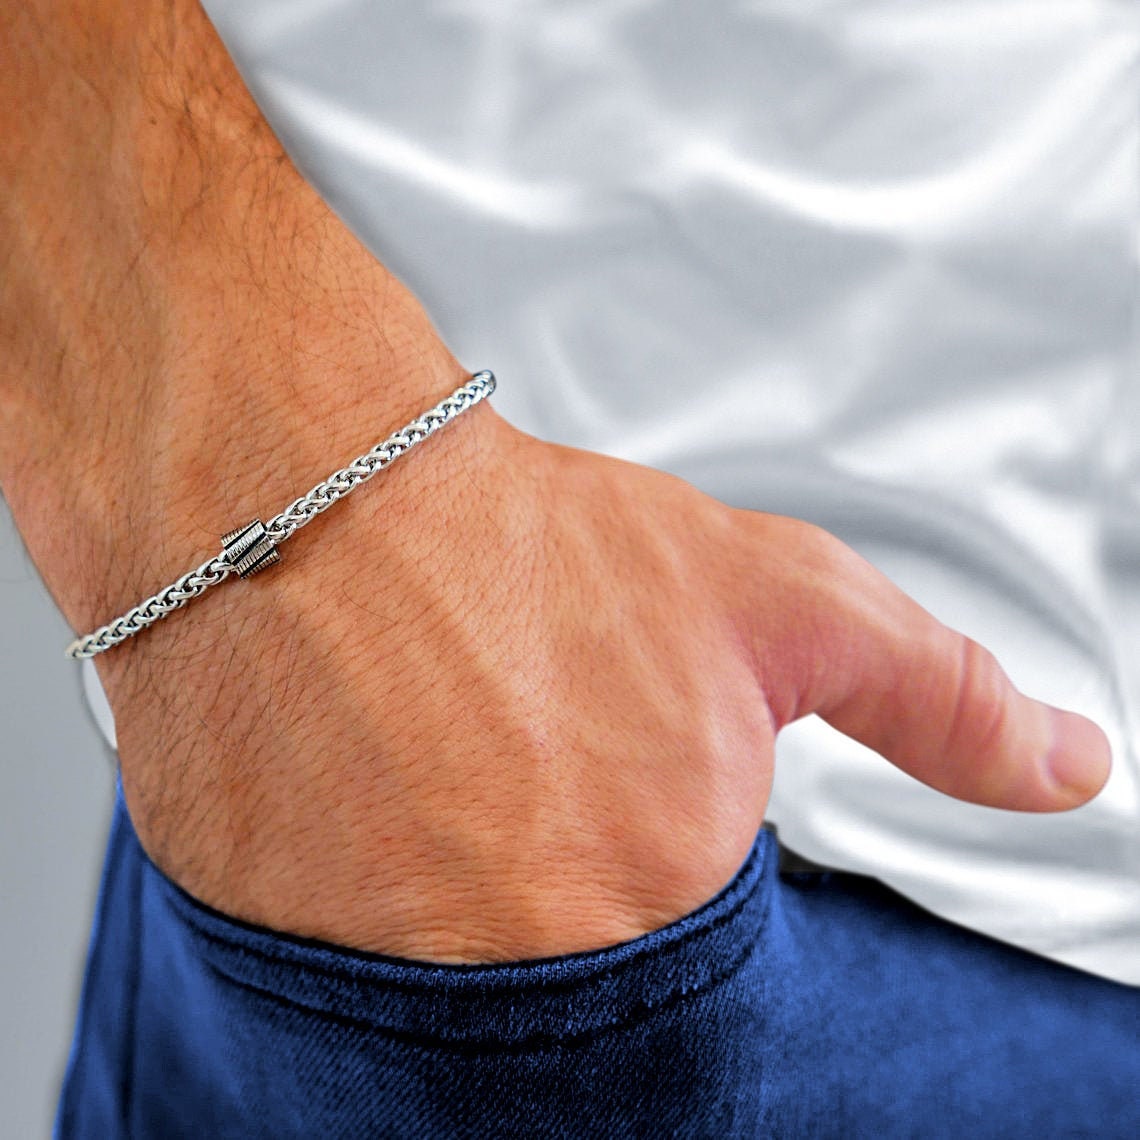 Men's Chain Bracelet - Men's Silver Bracelet - Men's Cuff Bracelet - Men's  Bracelet - Men's Jewelry - Husbnad Gift - Boyfiren Gift - Male